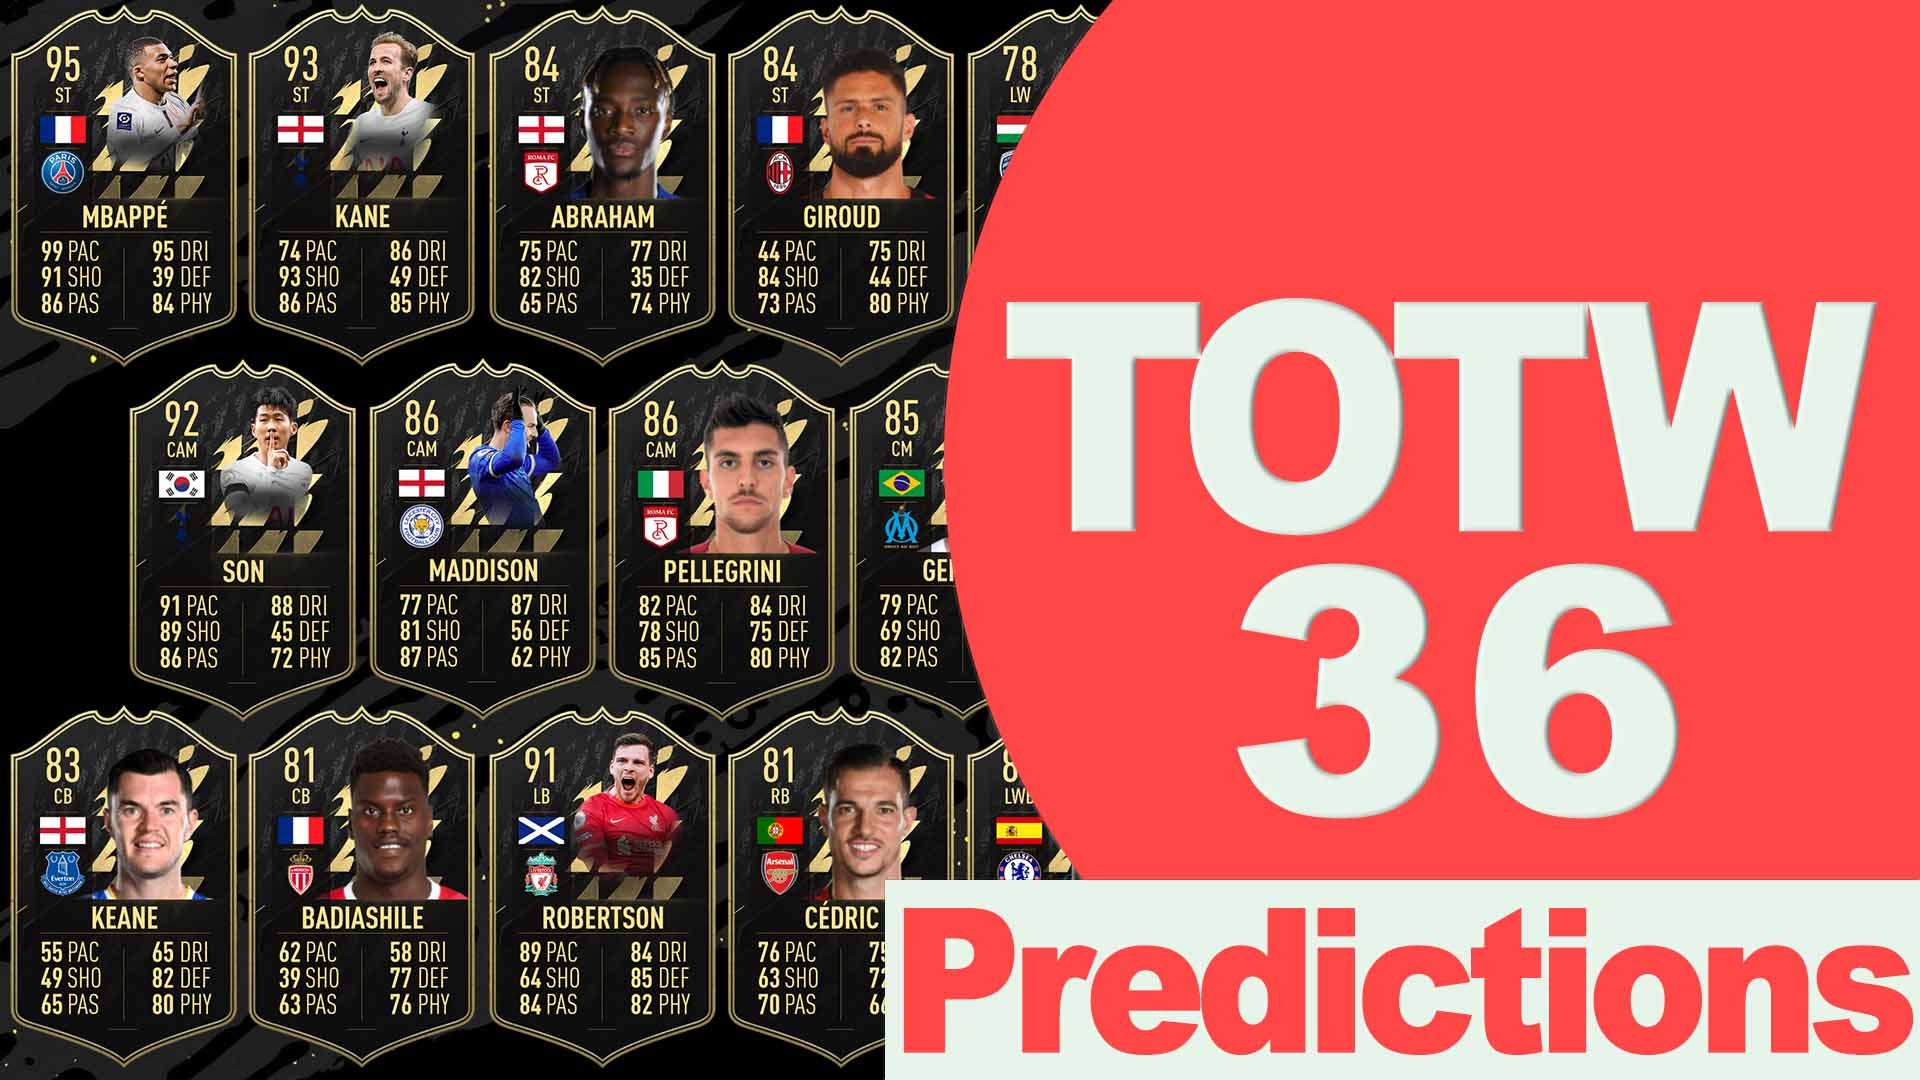 Bilder zu FIFA 22 TOTW 36 Predictions: Die Vorhersagen für das neue Team of the Week